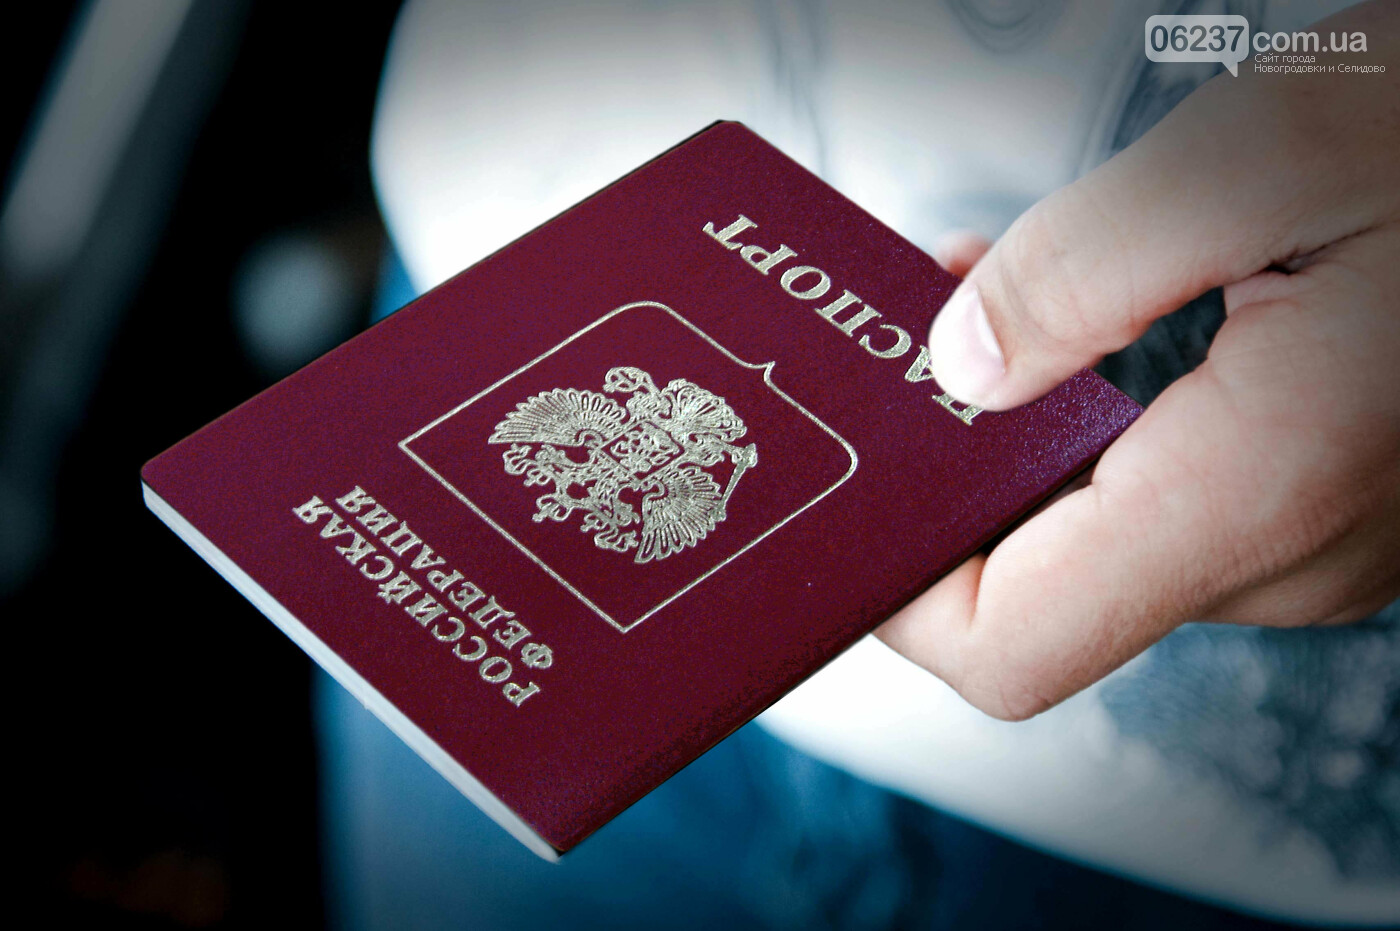 Украина отследит граждан, получивших российские паспорта, фото-1